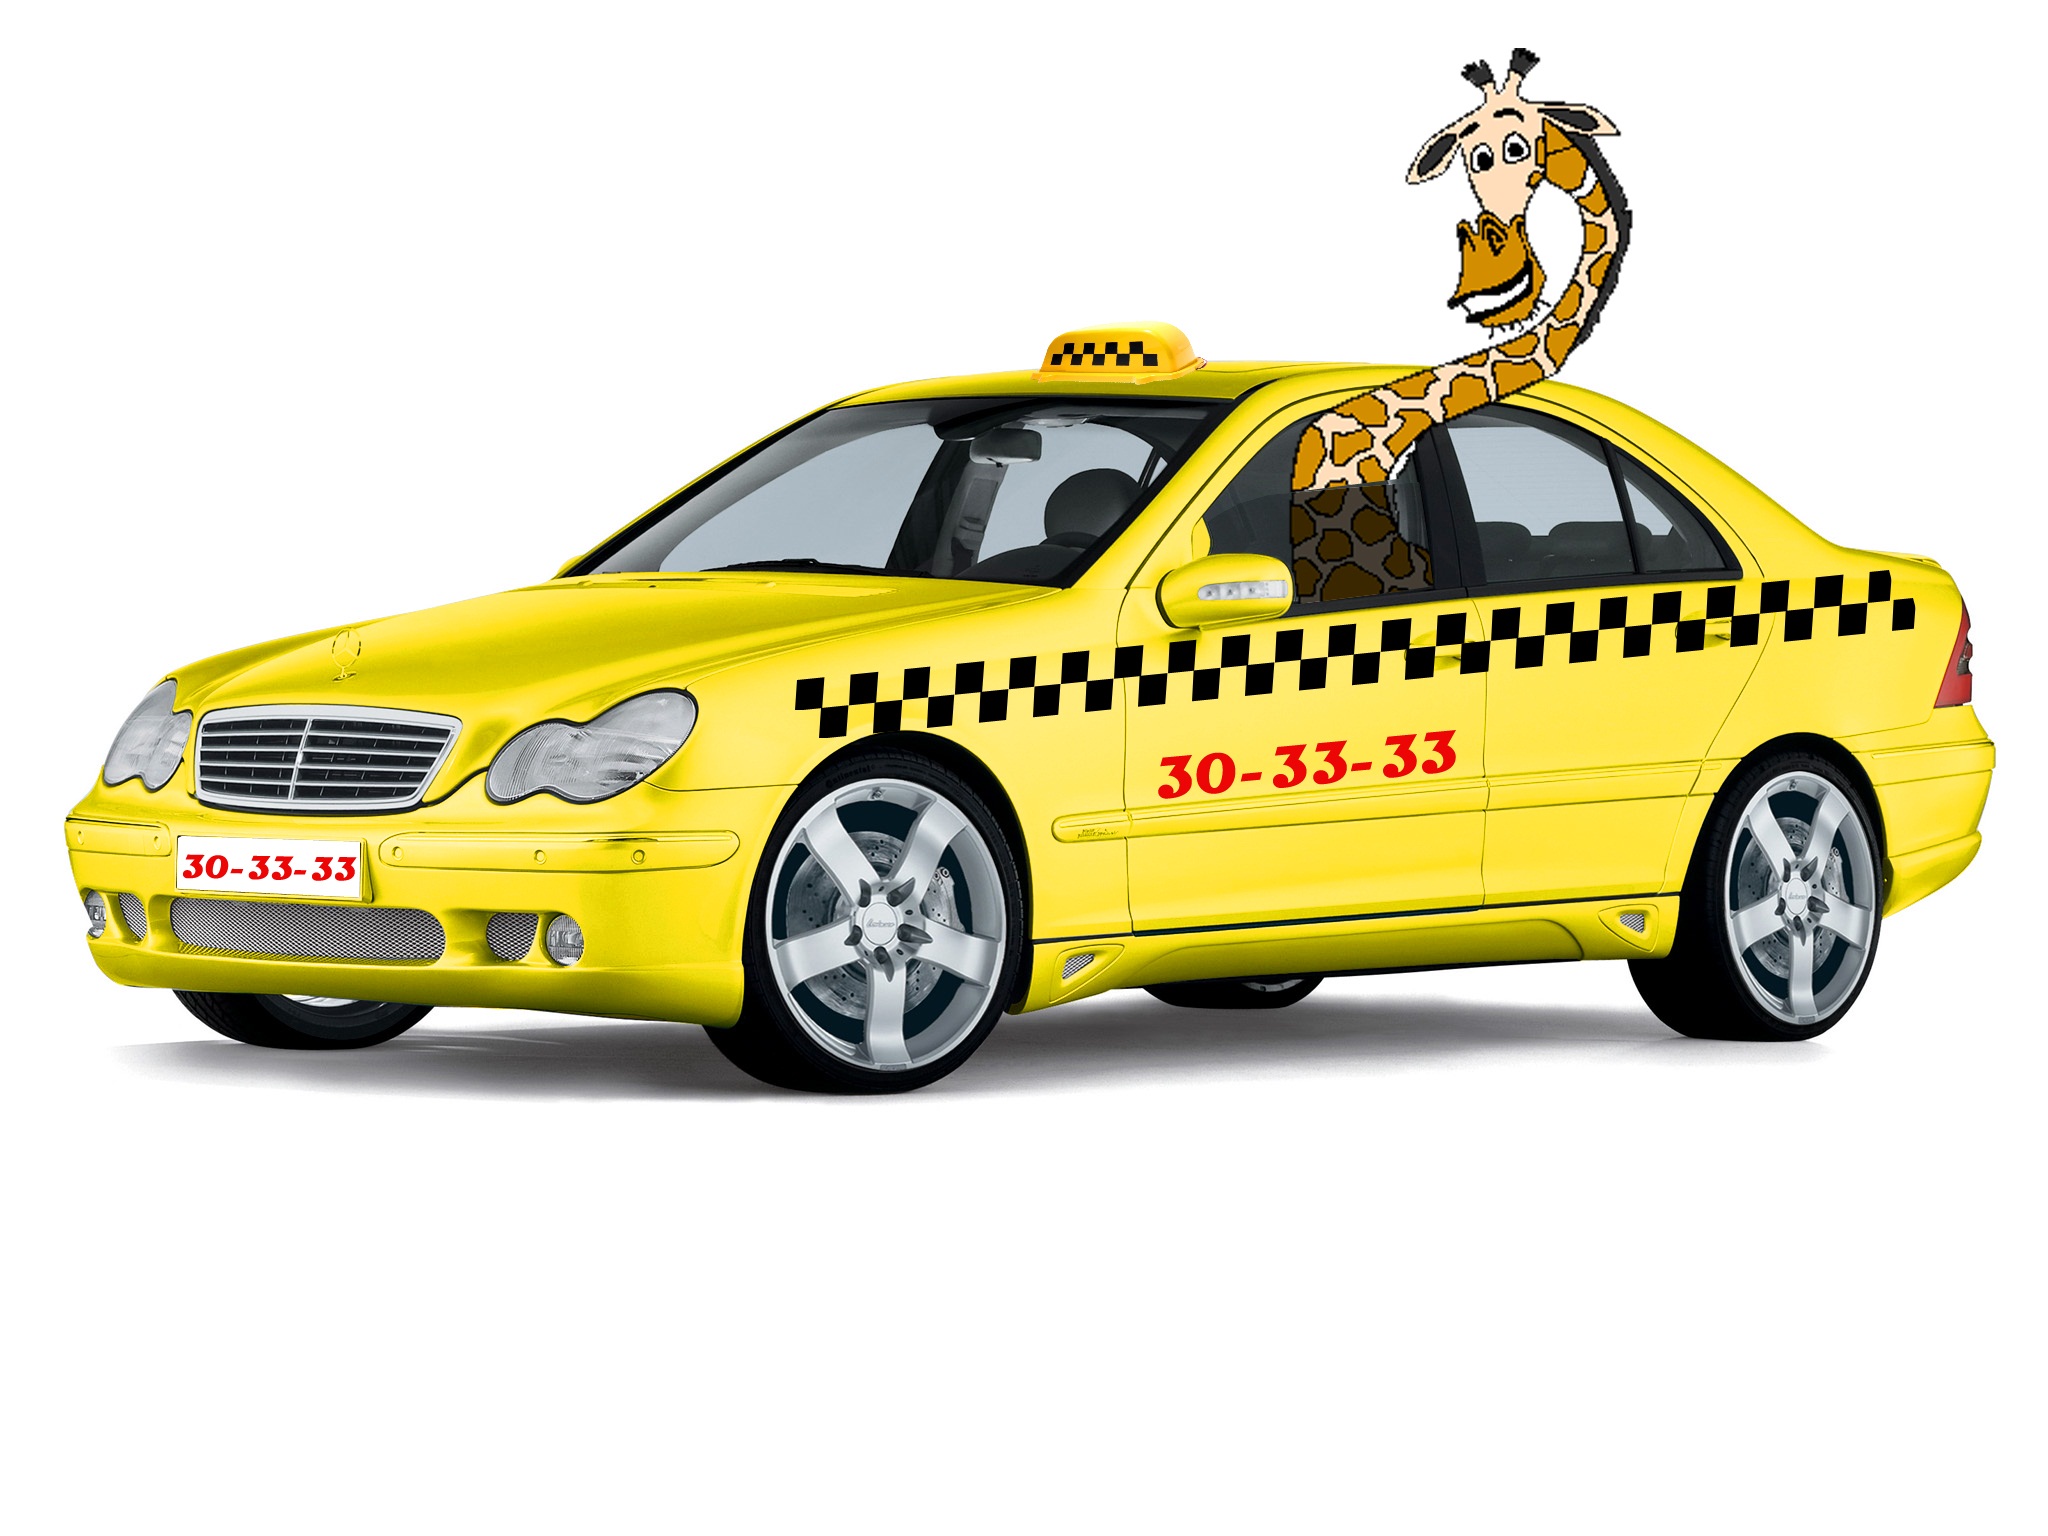 Служба заказа такси "Жираф" 30-33-33